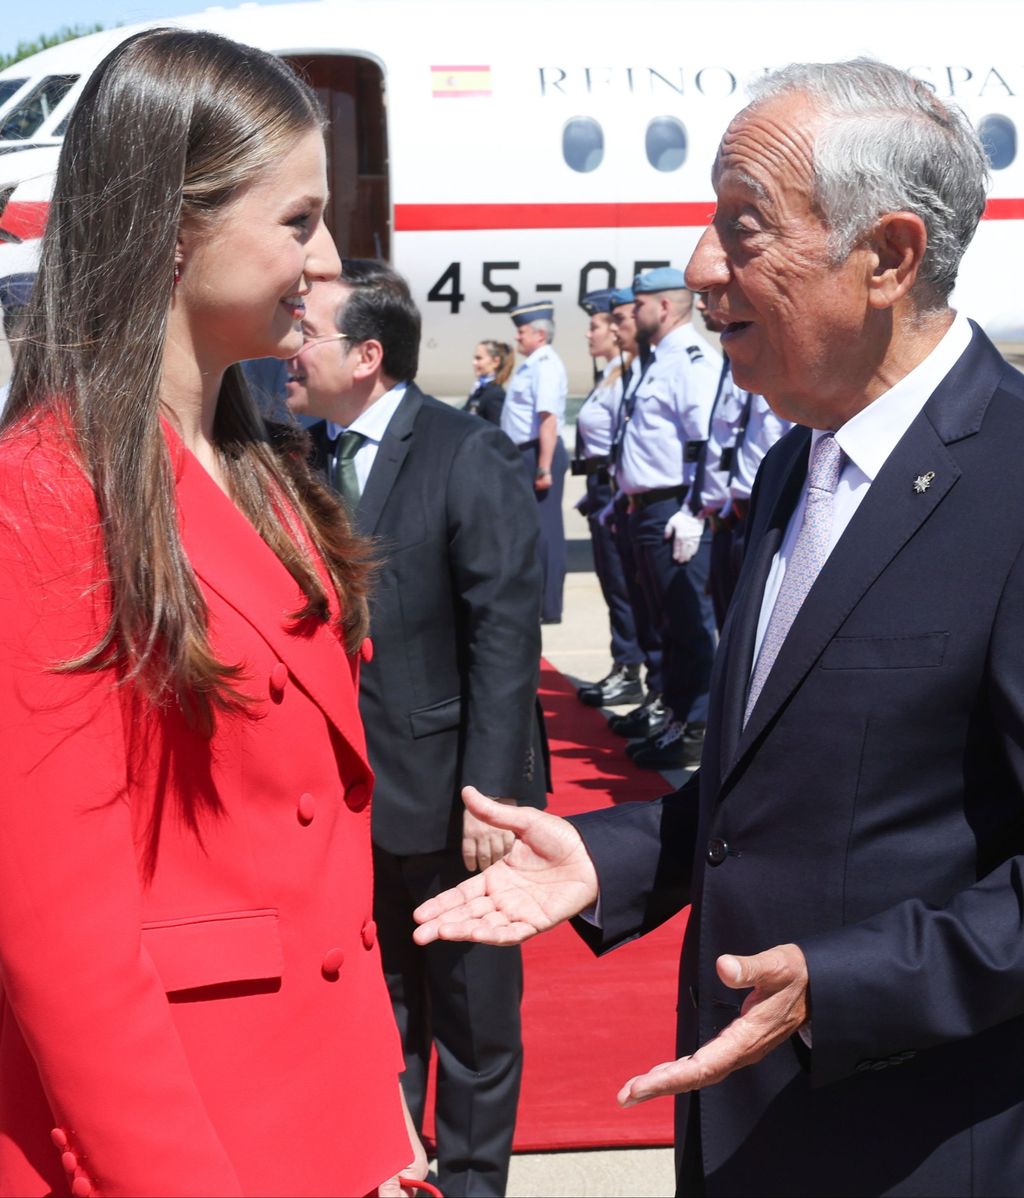 La princesa ha sido recibida por el presidente de la República Portuguesa